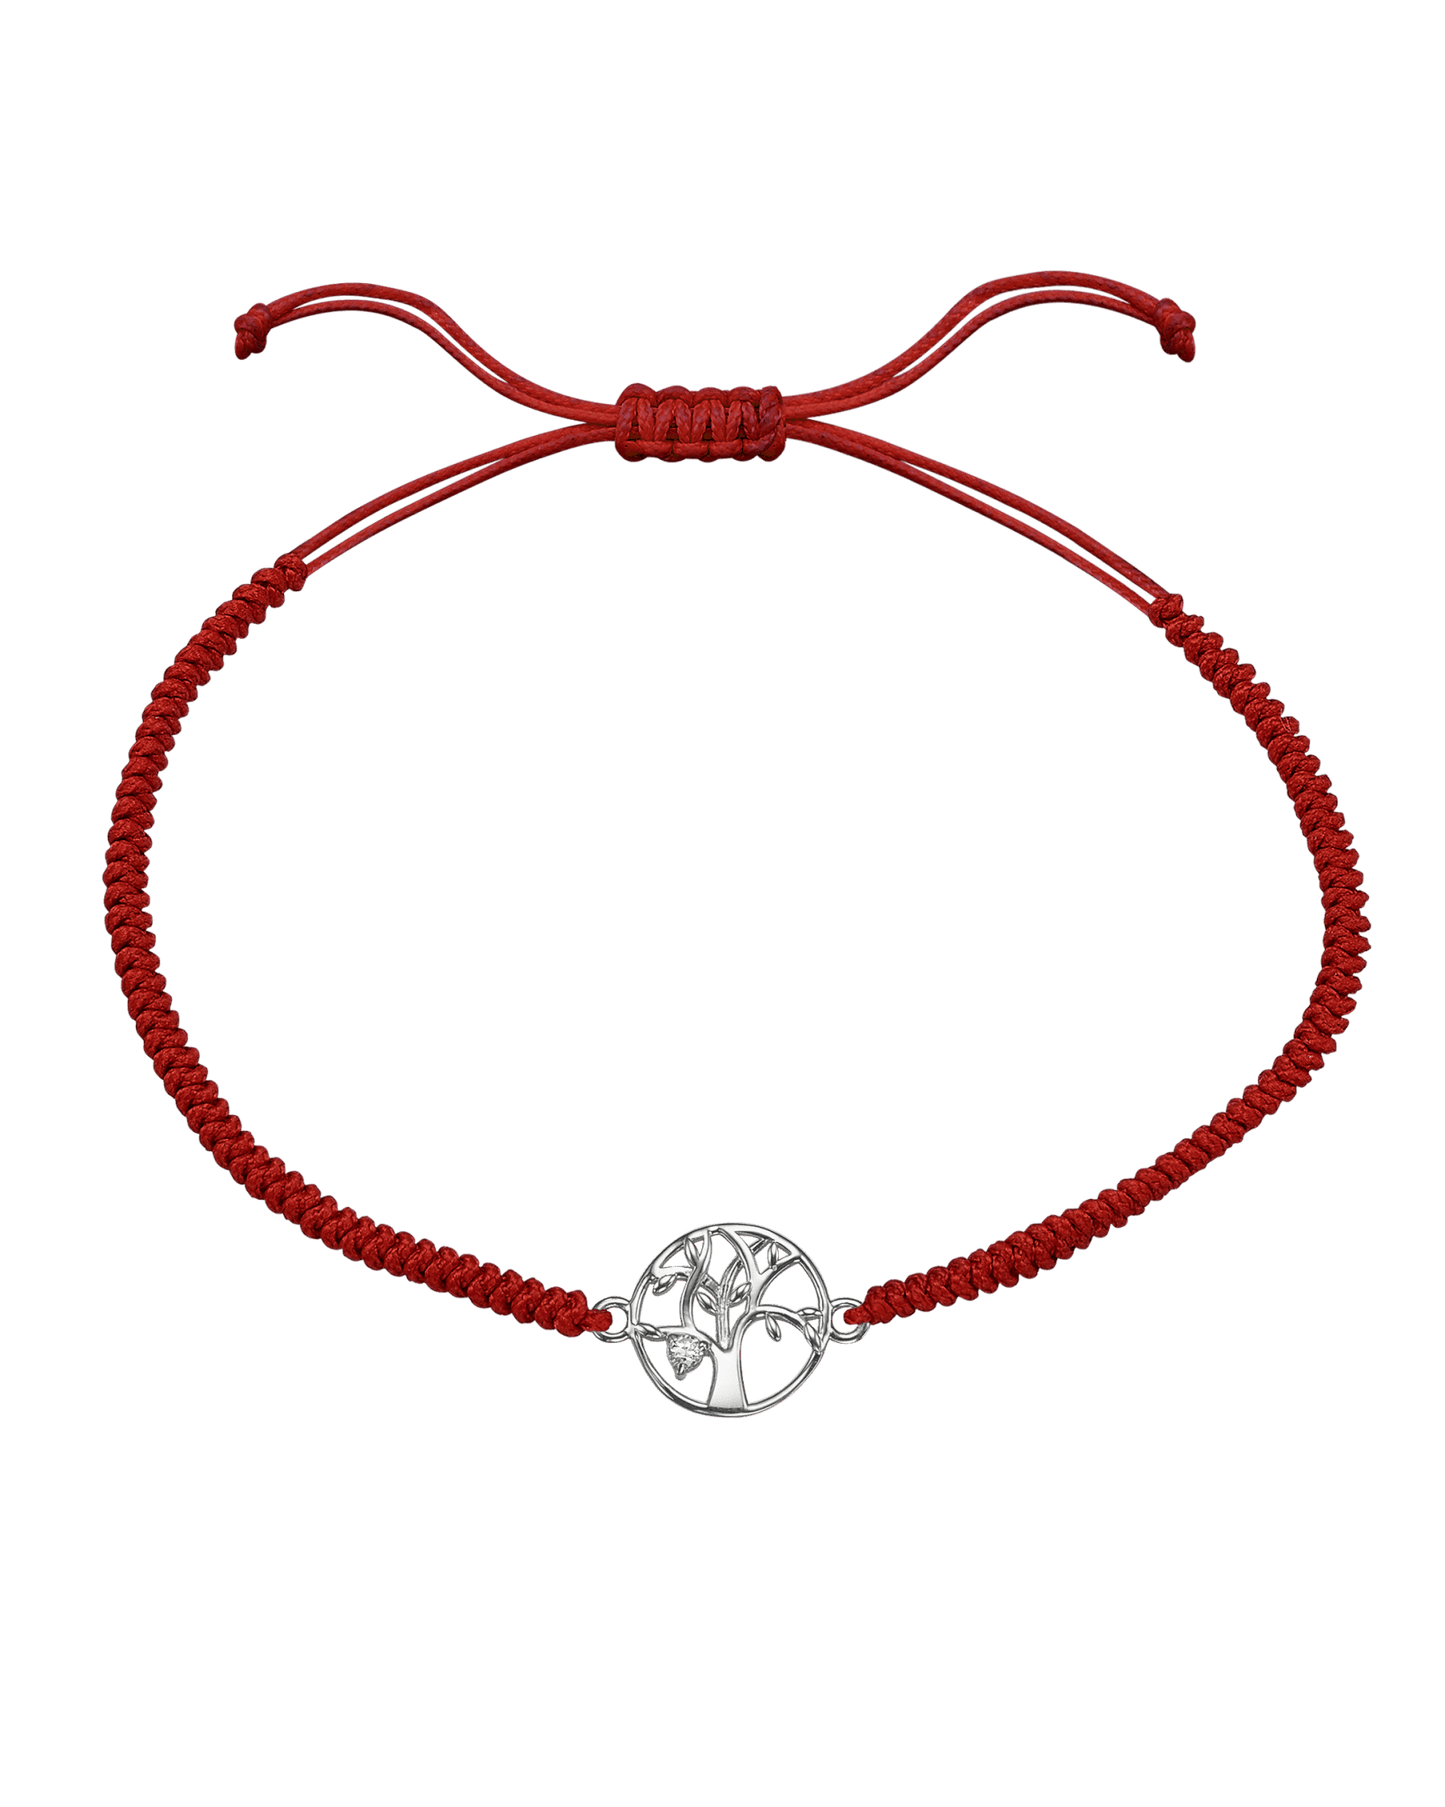 Tree of Life [RED] - 14K White Gold Bracelet magal-dev 